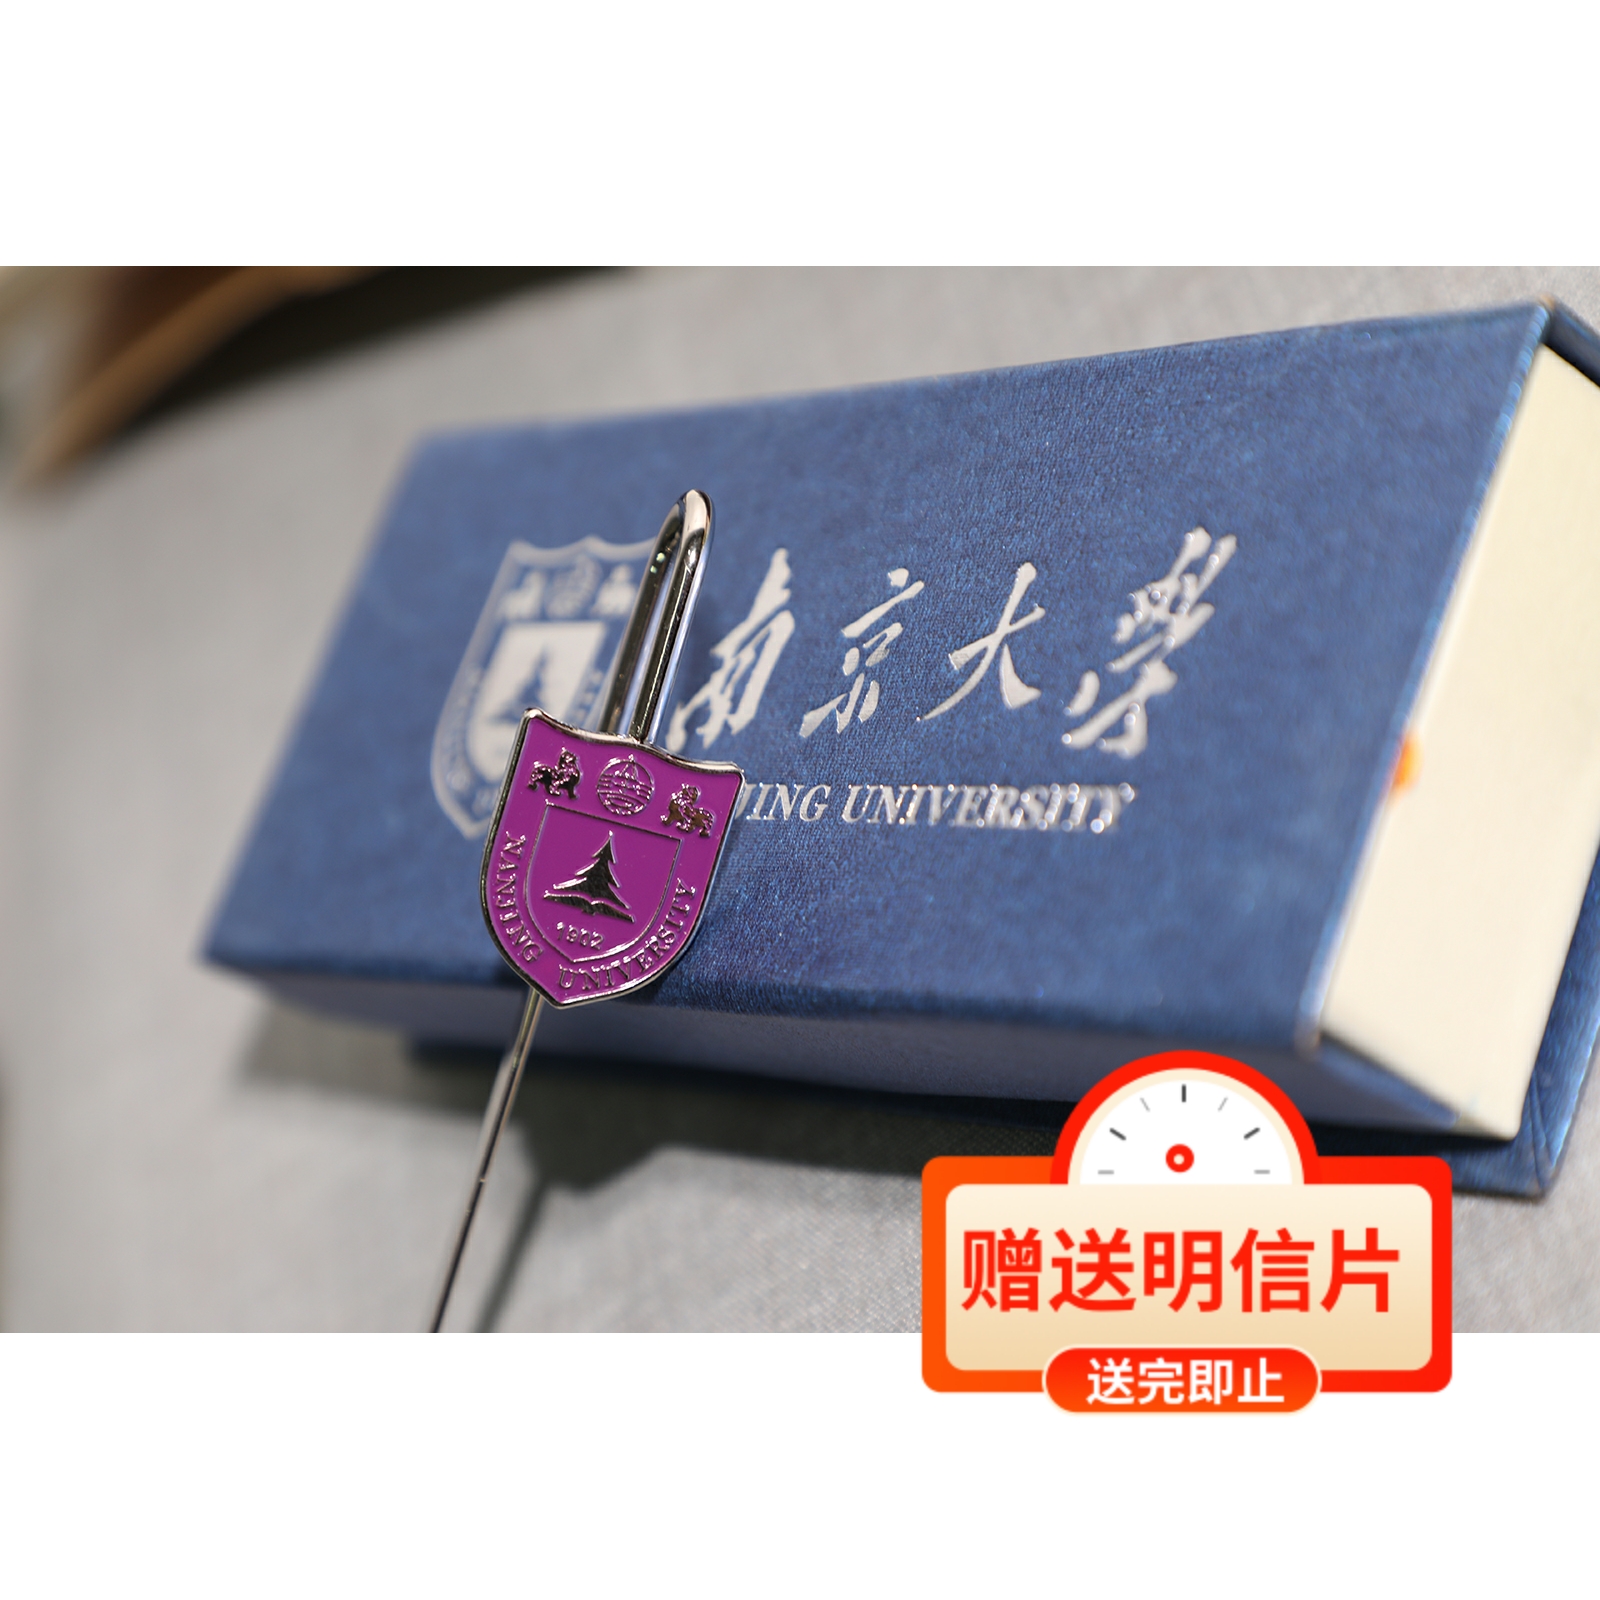 南京大学书签 南大书签 南大校徽 南大书签 南京大学纪念品